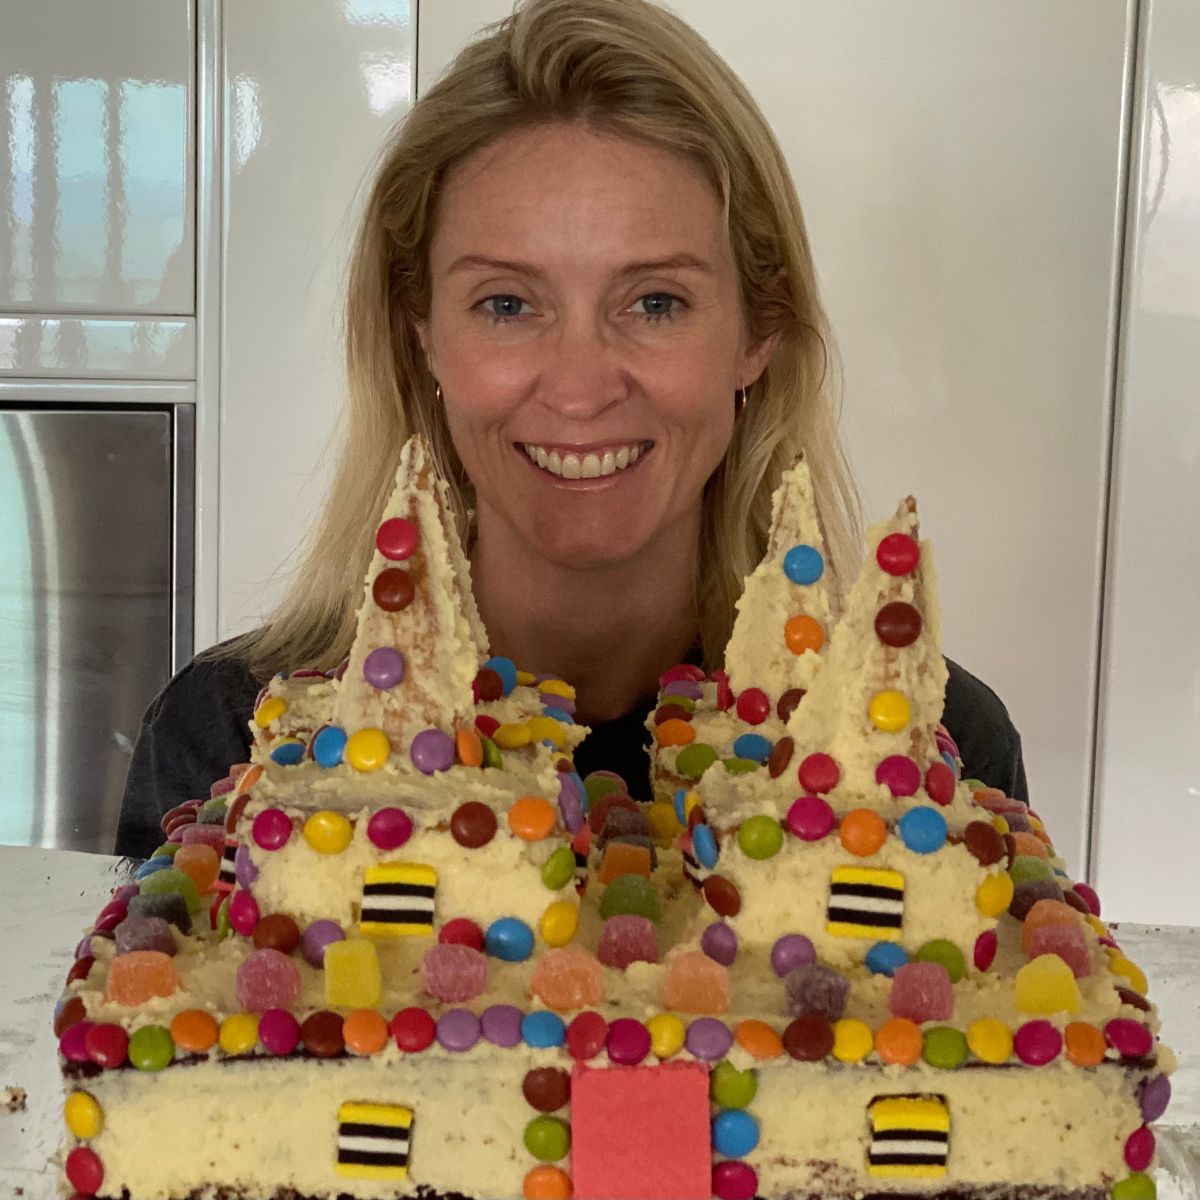 Rebecca Vonhoff with birthday cake baked for child's birthday